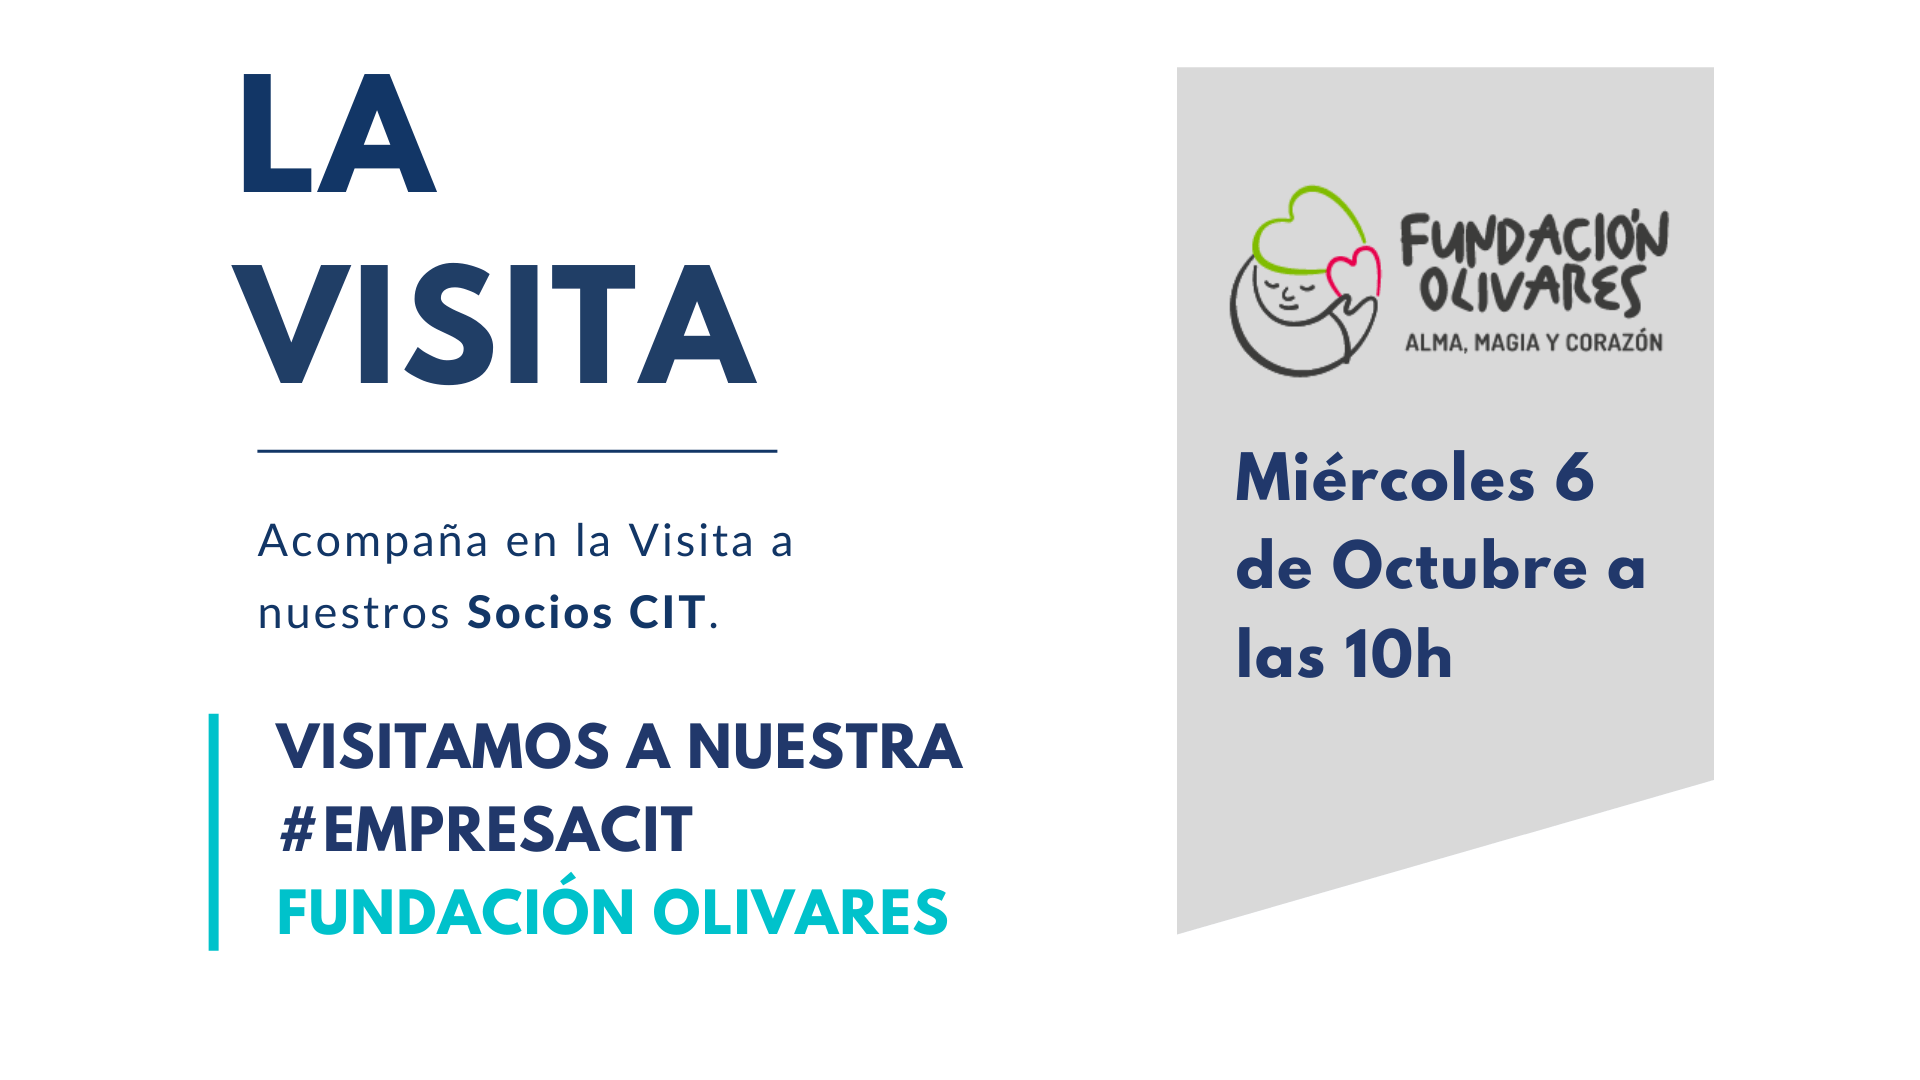 La visita con Fundación Olivares